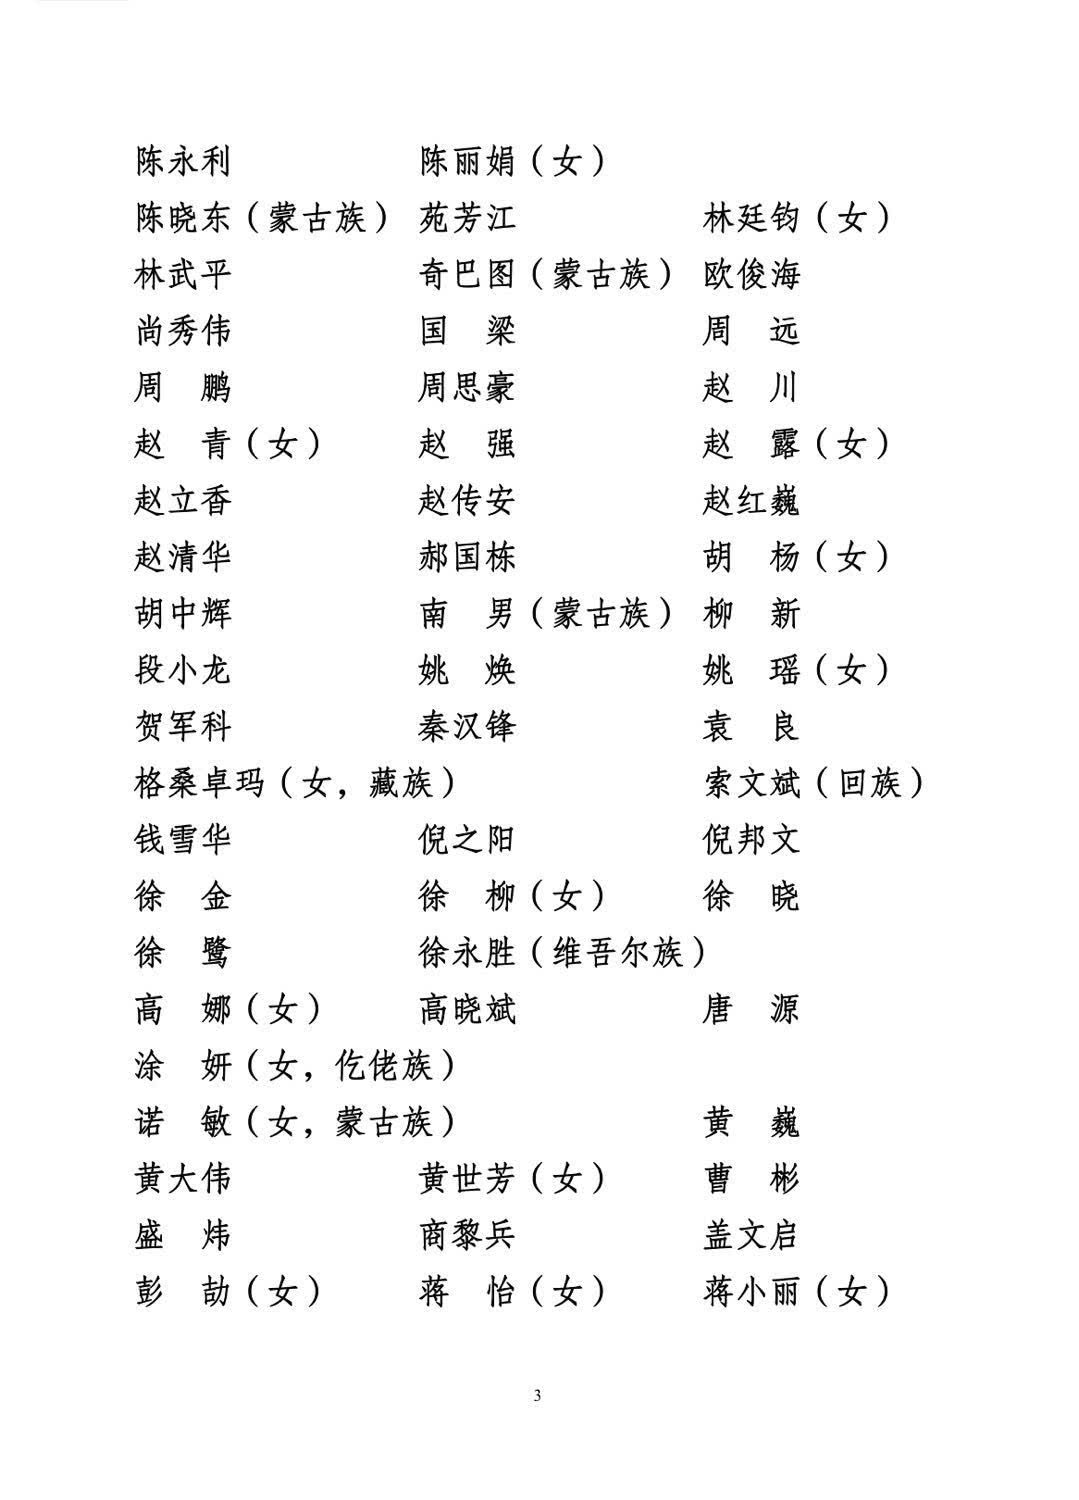 共青团十八届中央委员会委员、候补委员名单